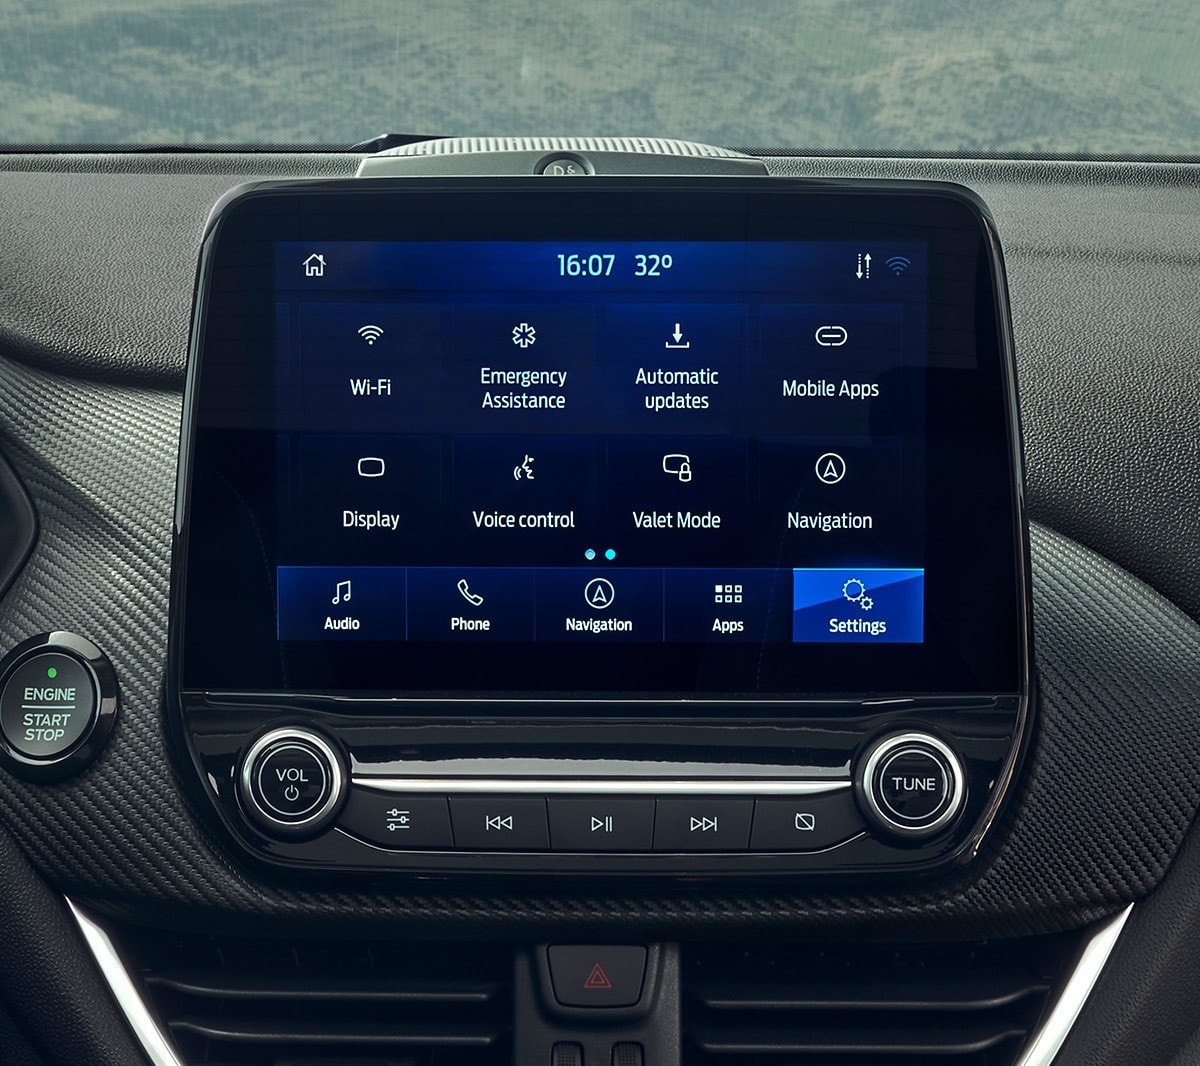 Ford Fiesta. Vista interna dettagliata del touchscreen del Ford SYNC.